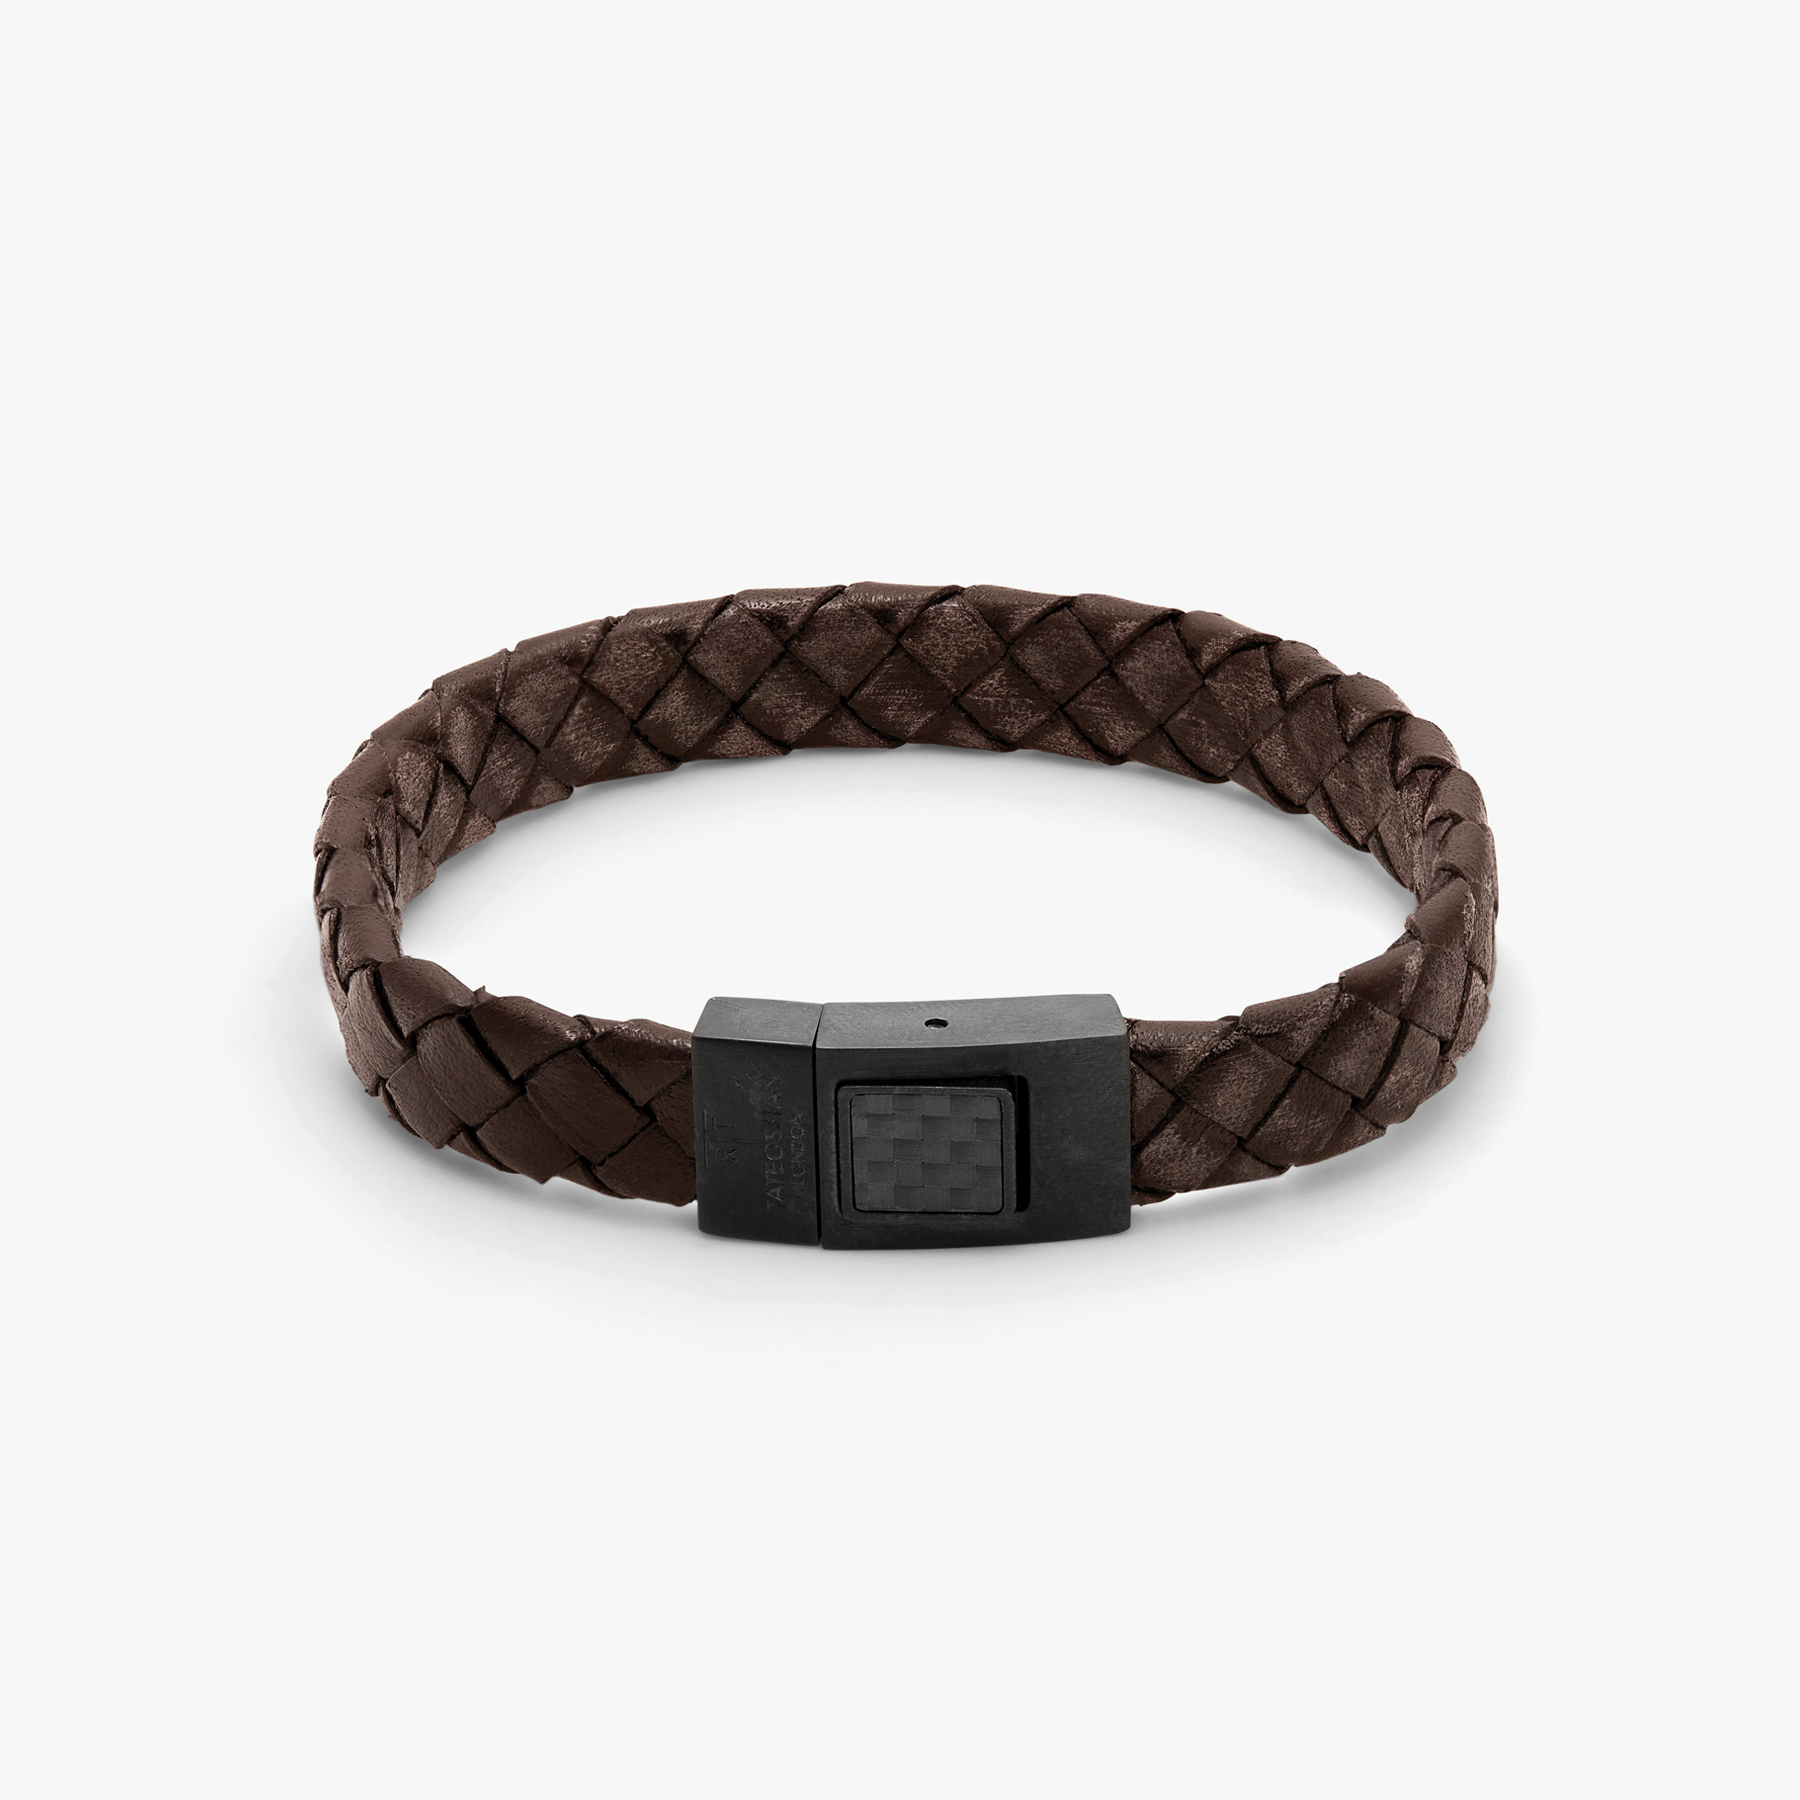 Louis Vuitton - Friendship Bracelet - Leather - Multicolour - Men - Luxury